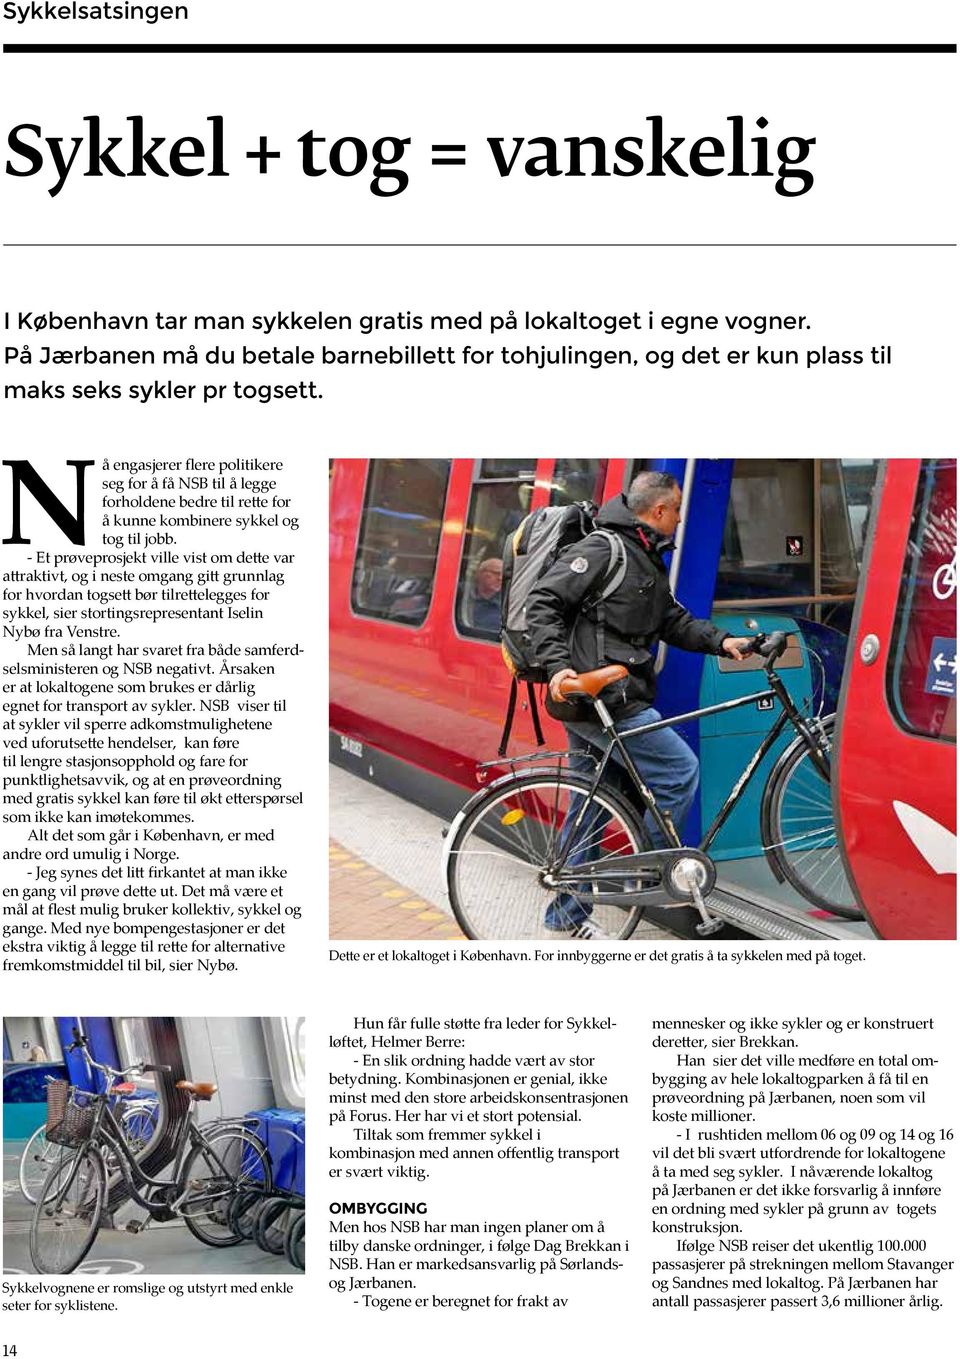 Nå engasjerer flere politikere seg for å få NSB til å legge forholdene bedre til rette for å kunne kombinere sykkel og tog til jobb.